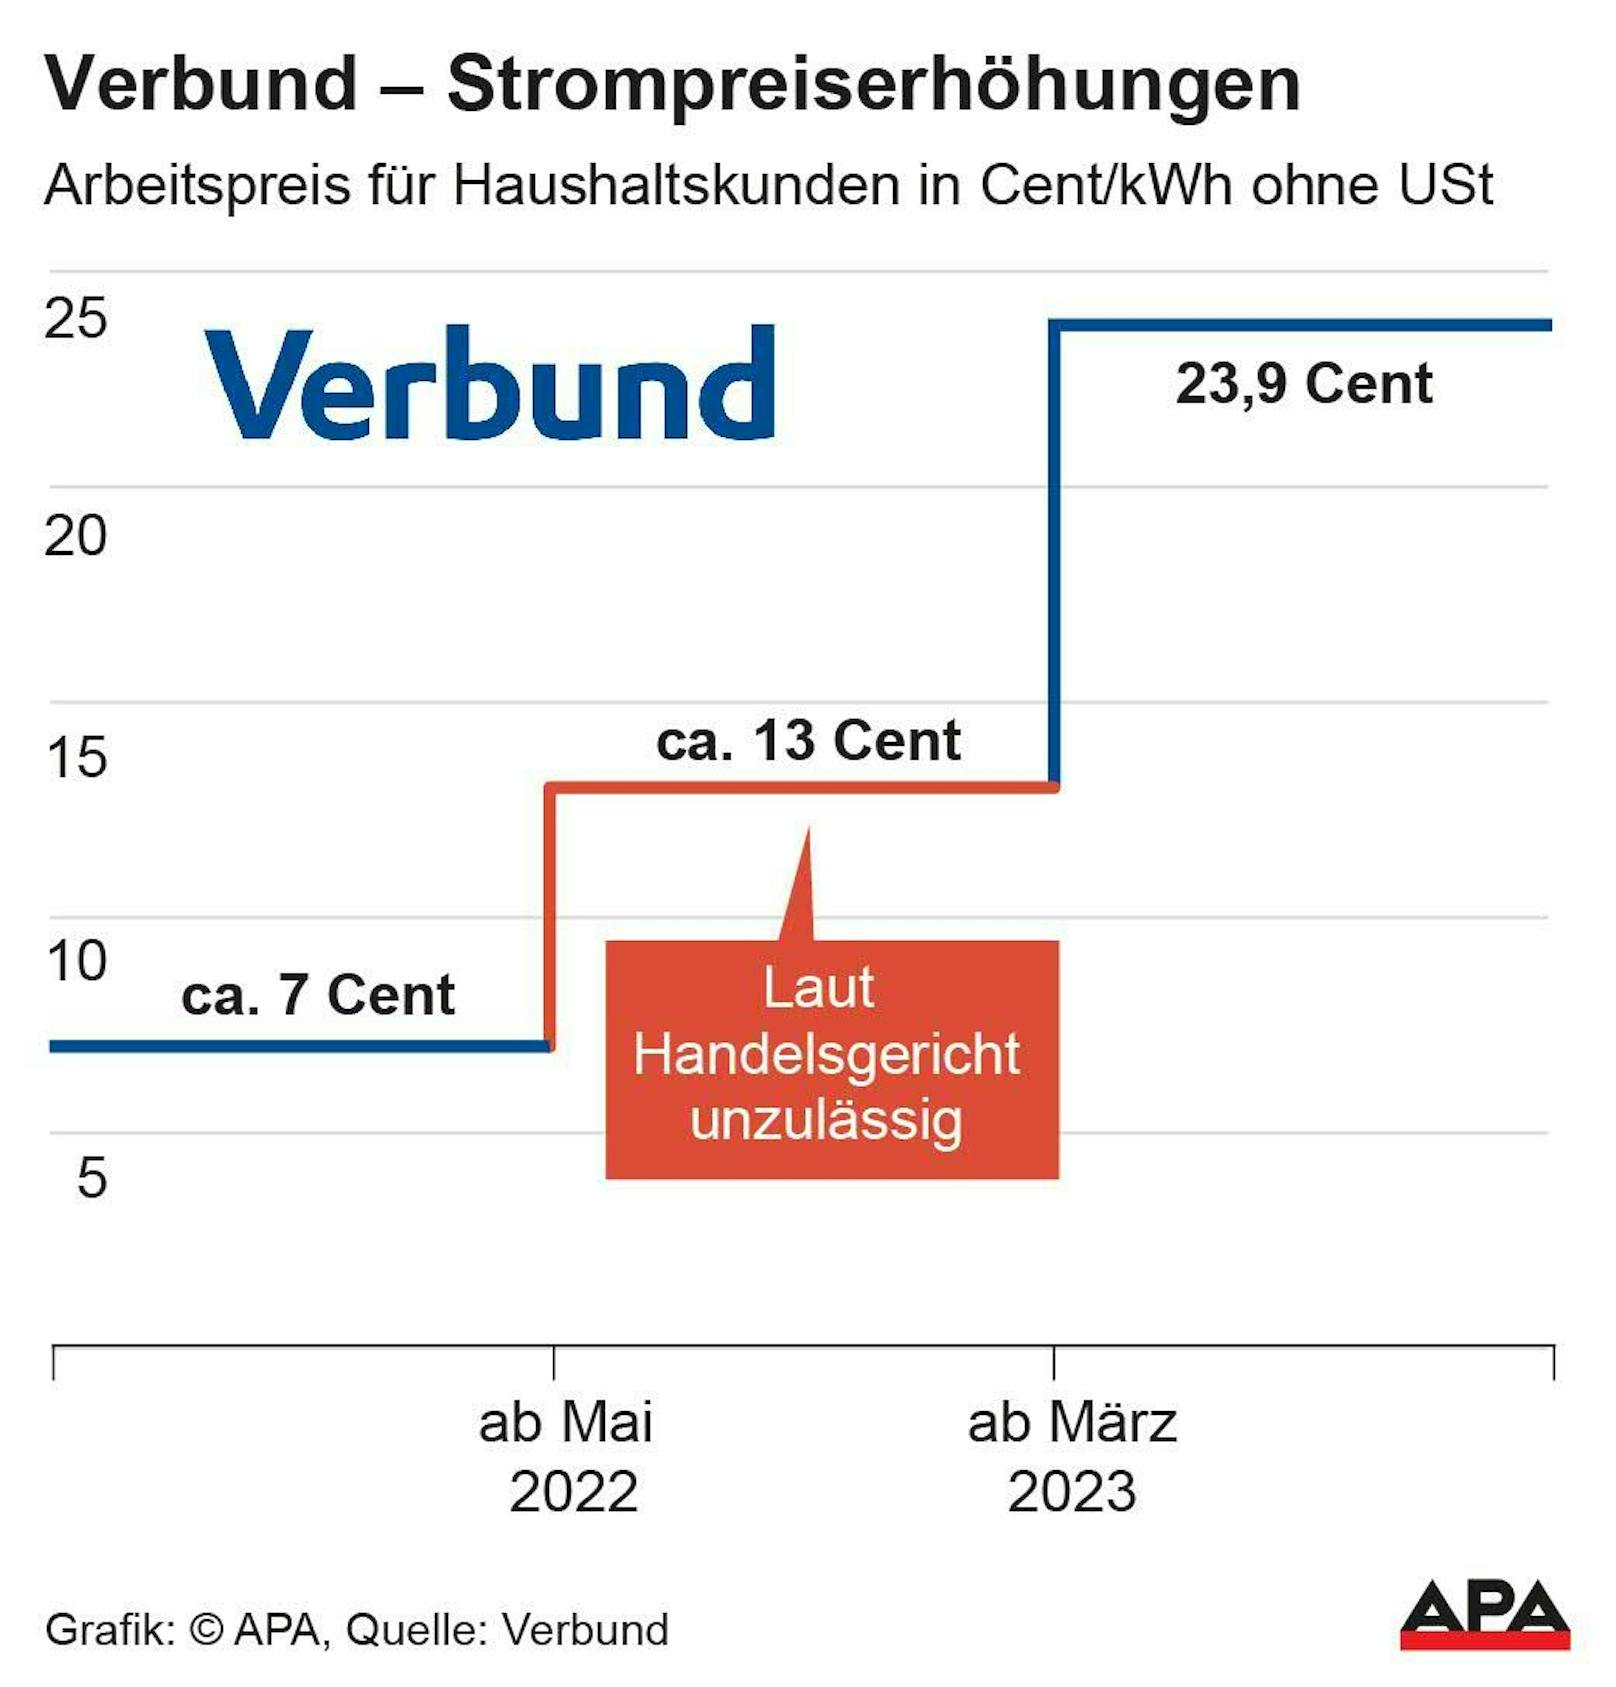 Verbund: Strom-Arbeitspreis für Haushaltskunden in Cent/KWh ohne Umsatzsteuer in den Jahren 2022/23.